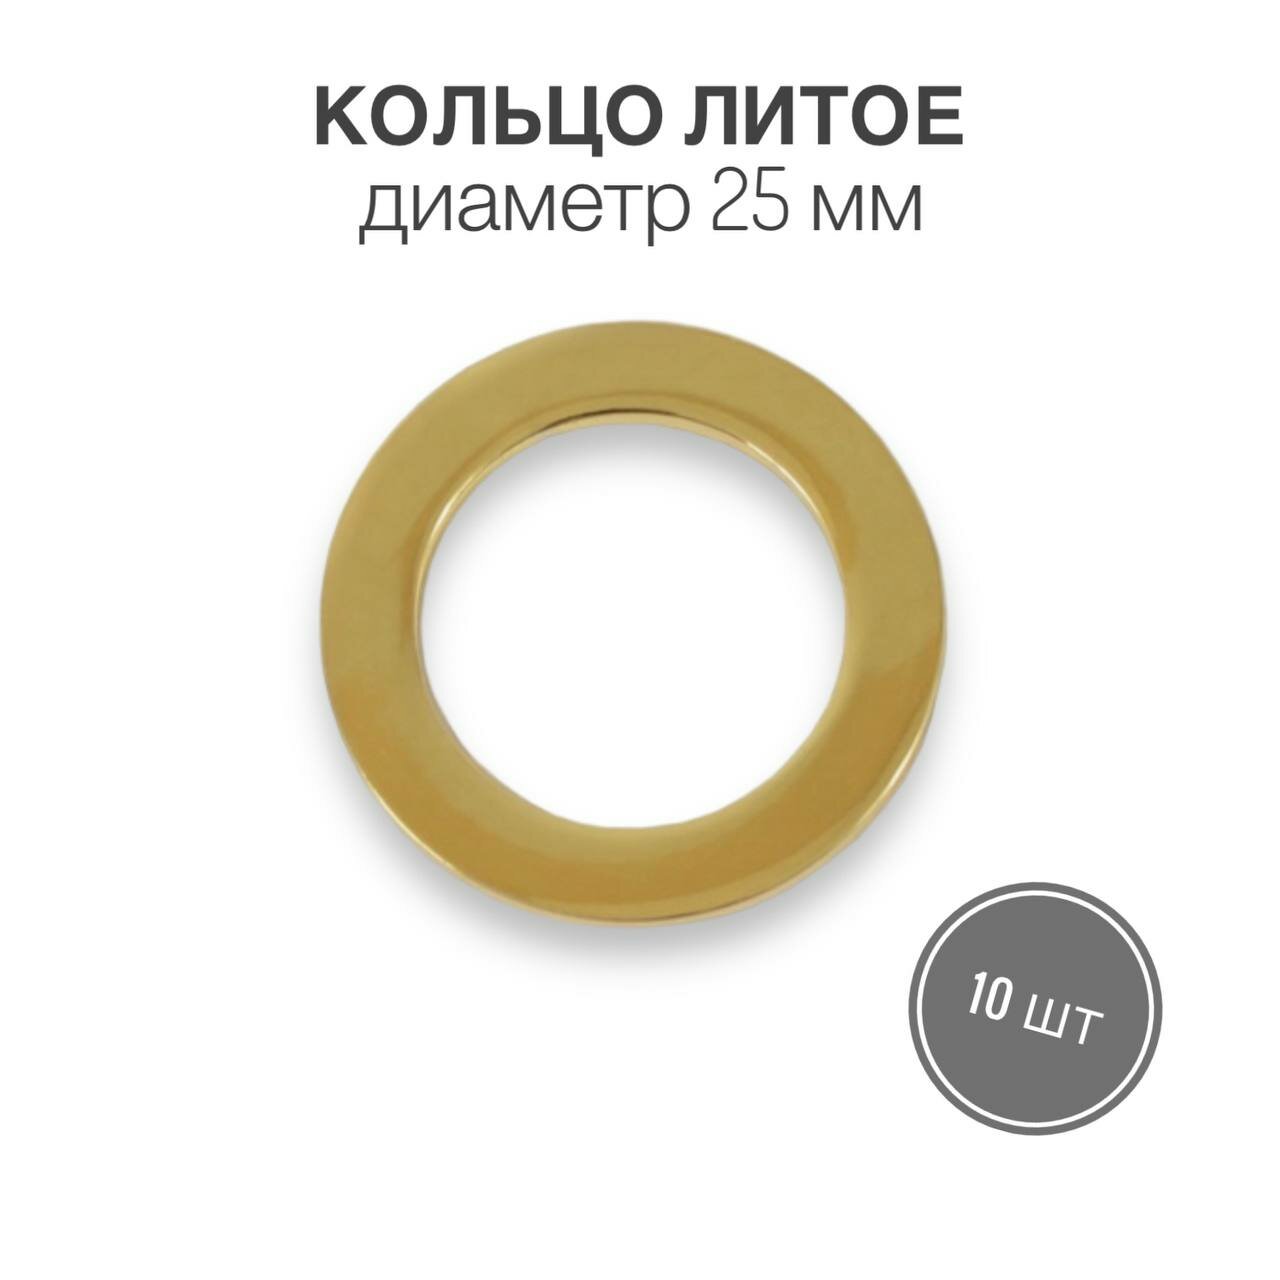 Кольцо литое, 25 мм, золото (брасс полированный), 10 шт